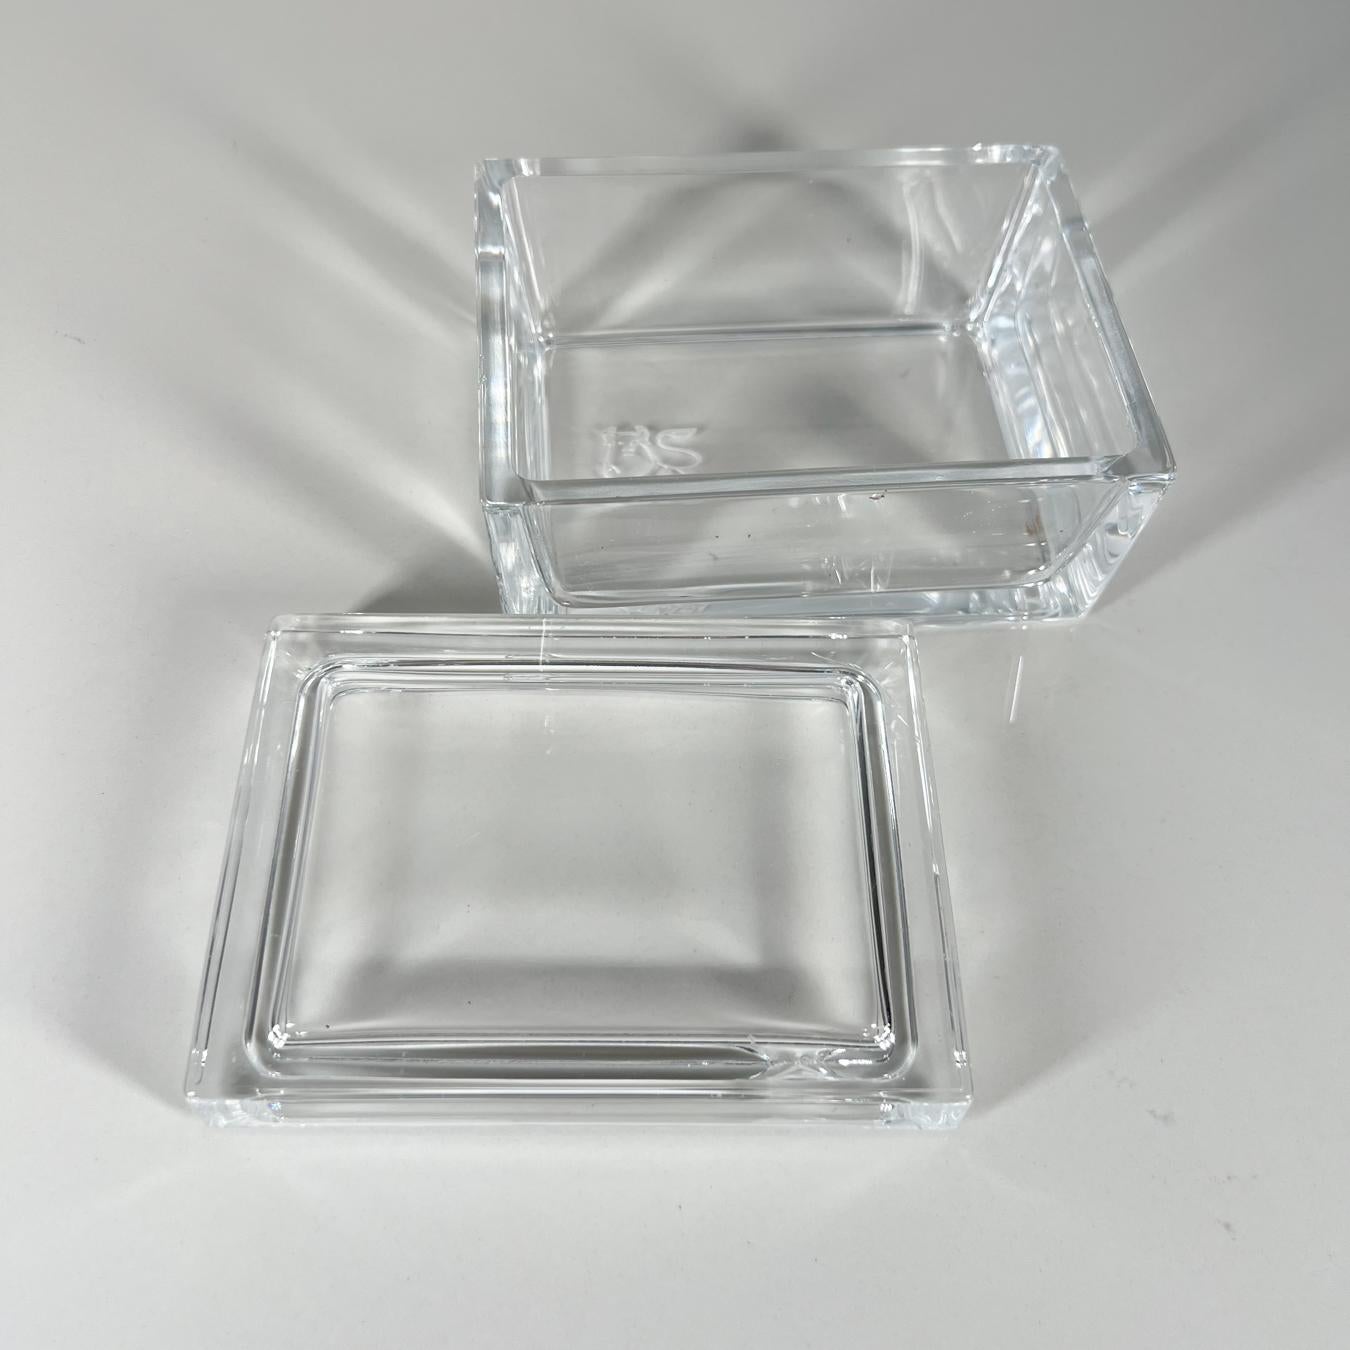 Merrill Lynch Glass Trinket Box 3